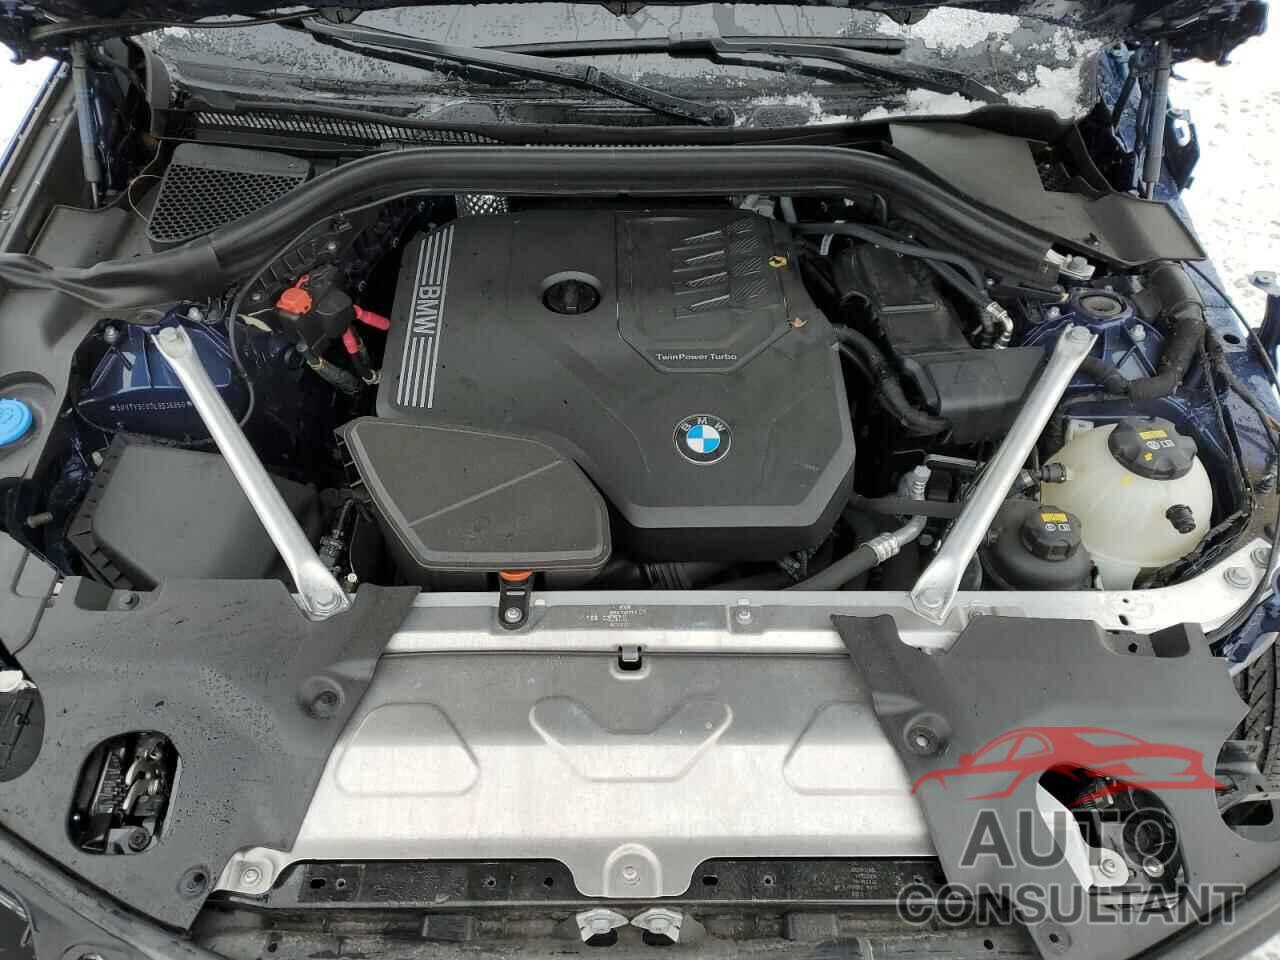 BMW X3 2020 - 5UXTY5C07L9D36860